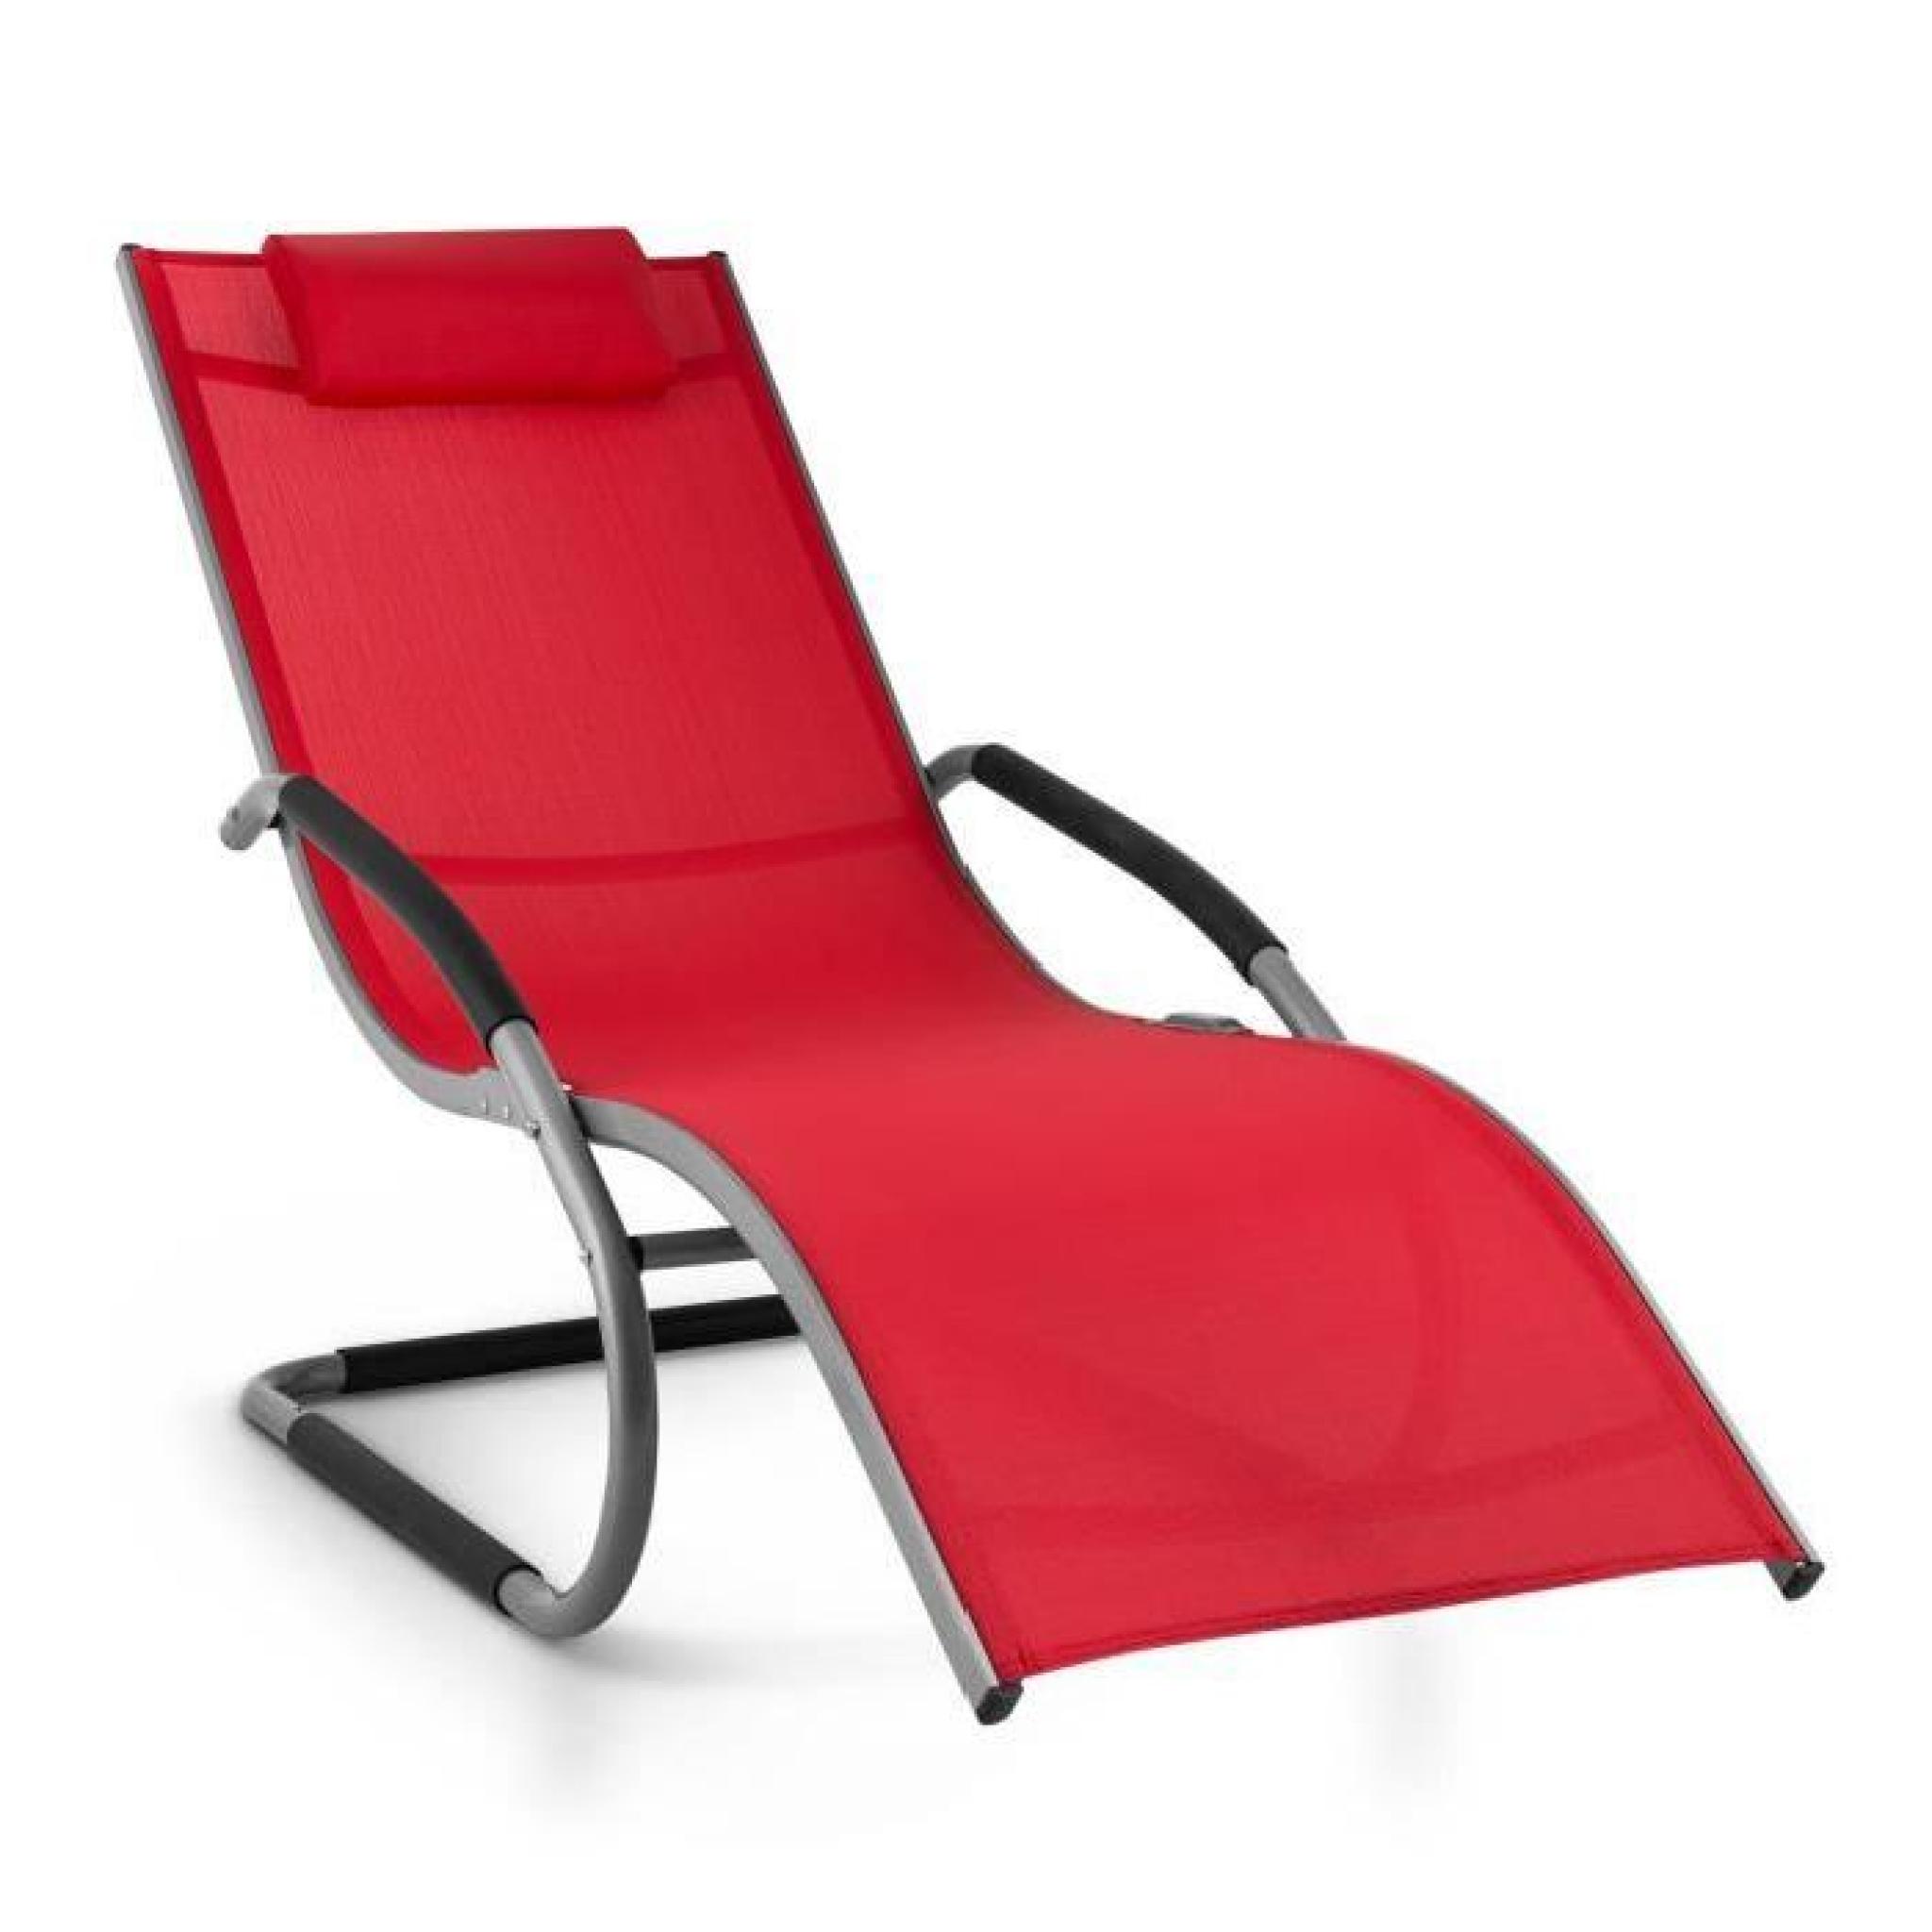 Blumfeldt Sunwave - Chaise longue de jardin avec accoudoirs, transat avec cadre en aluminium et effet bascule